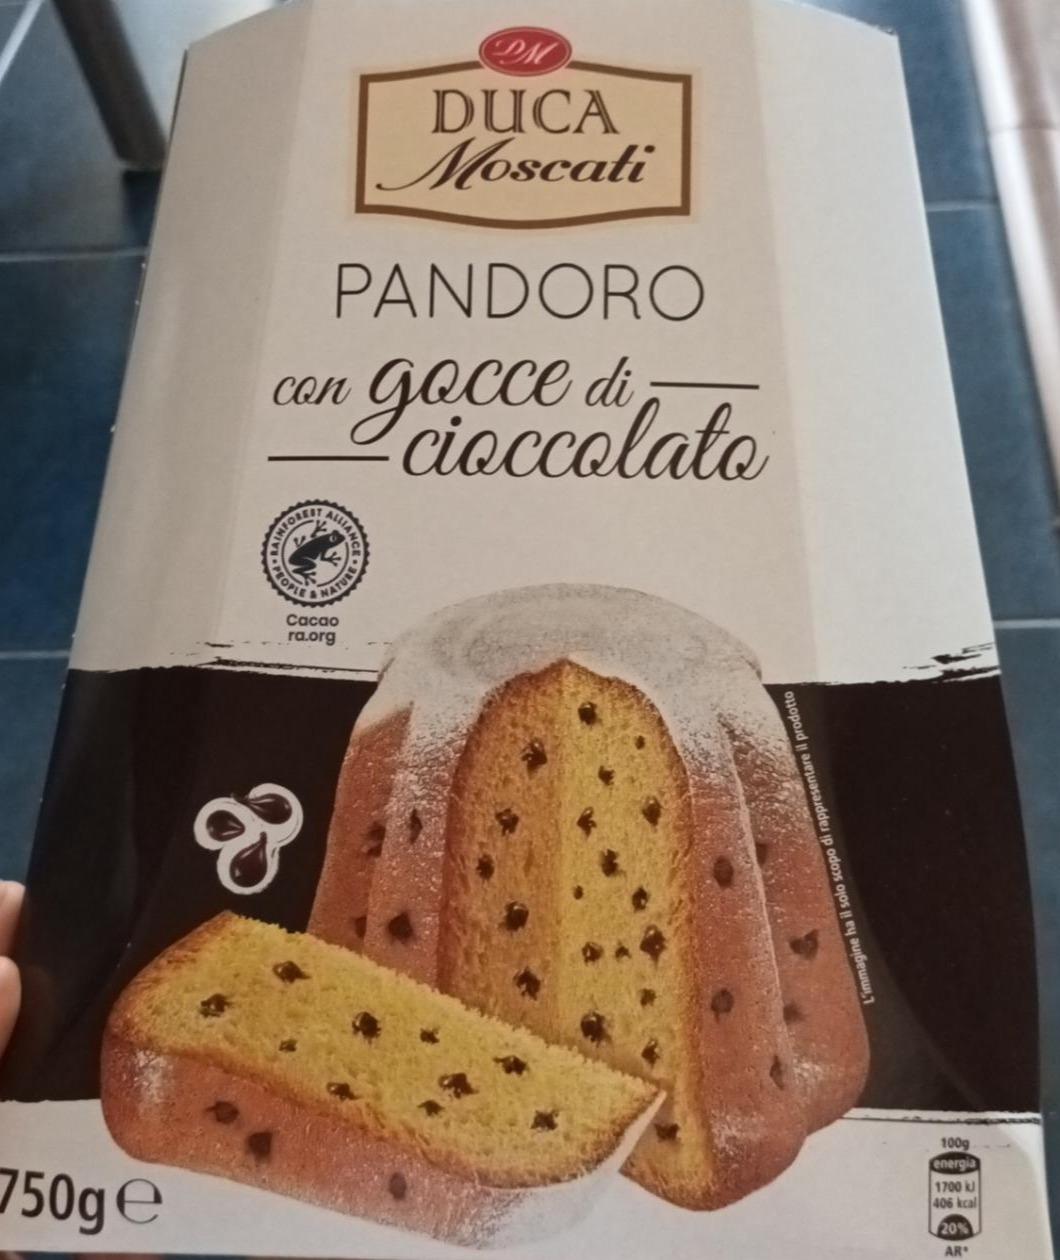 Fotografie - Pandoro con gocce di cioccolato Duca Moscati